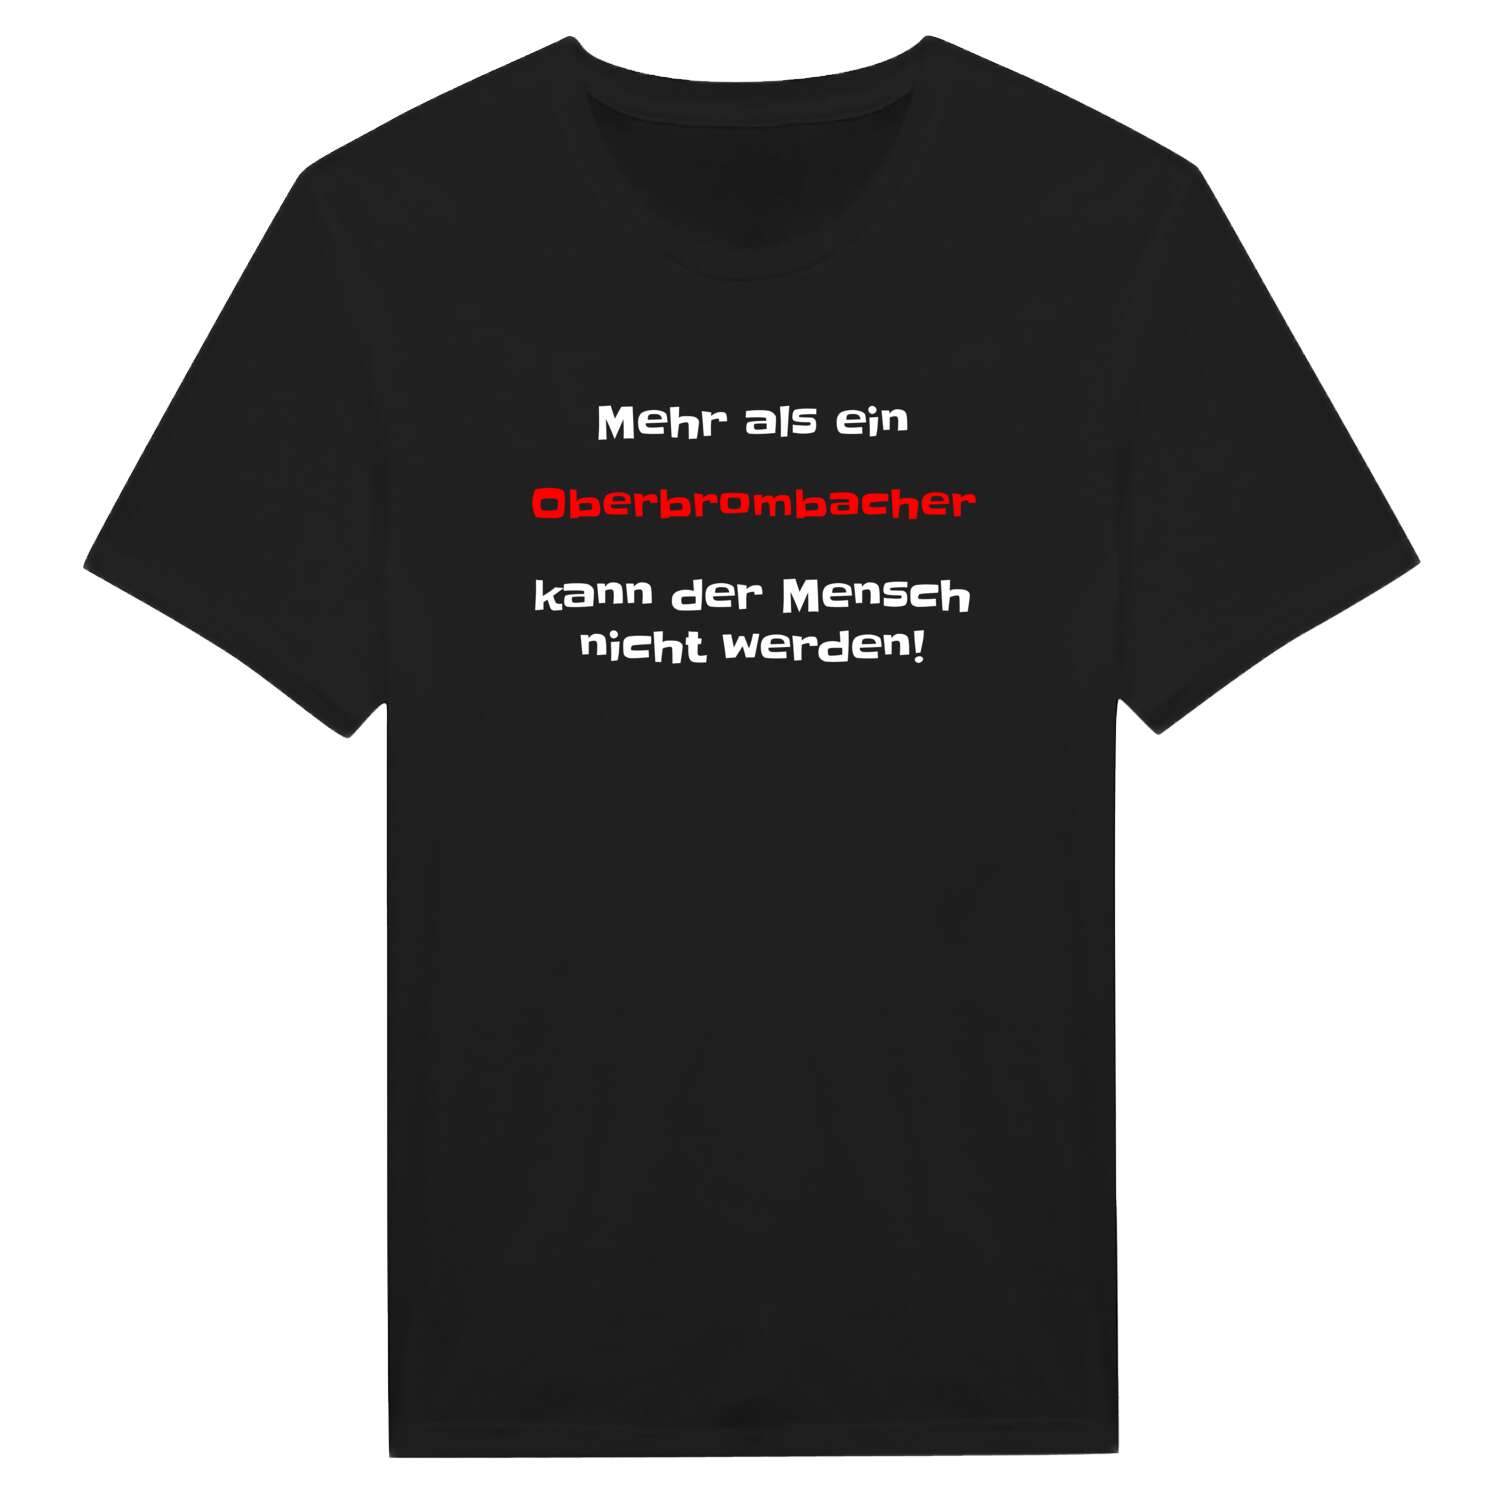 Oberbrombach T-Shirt »Mehr als ein«